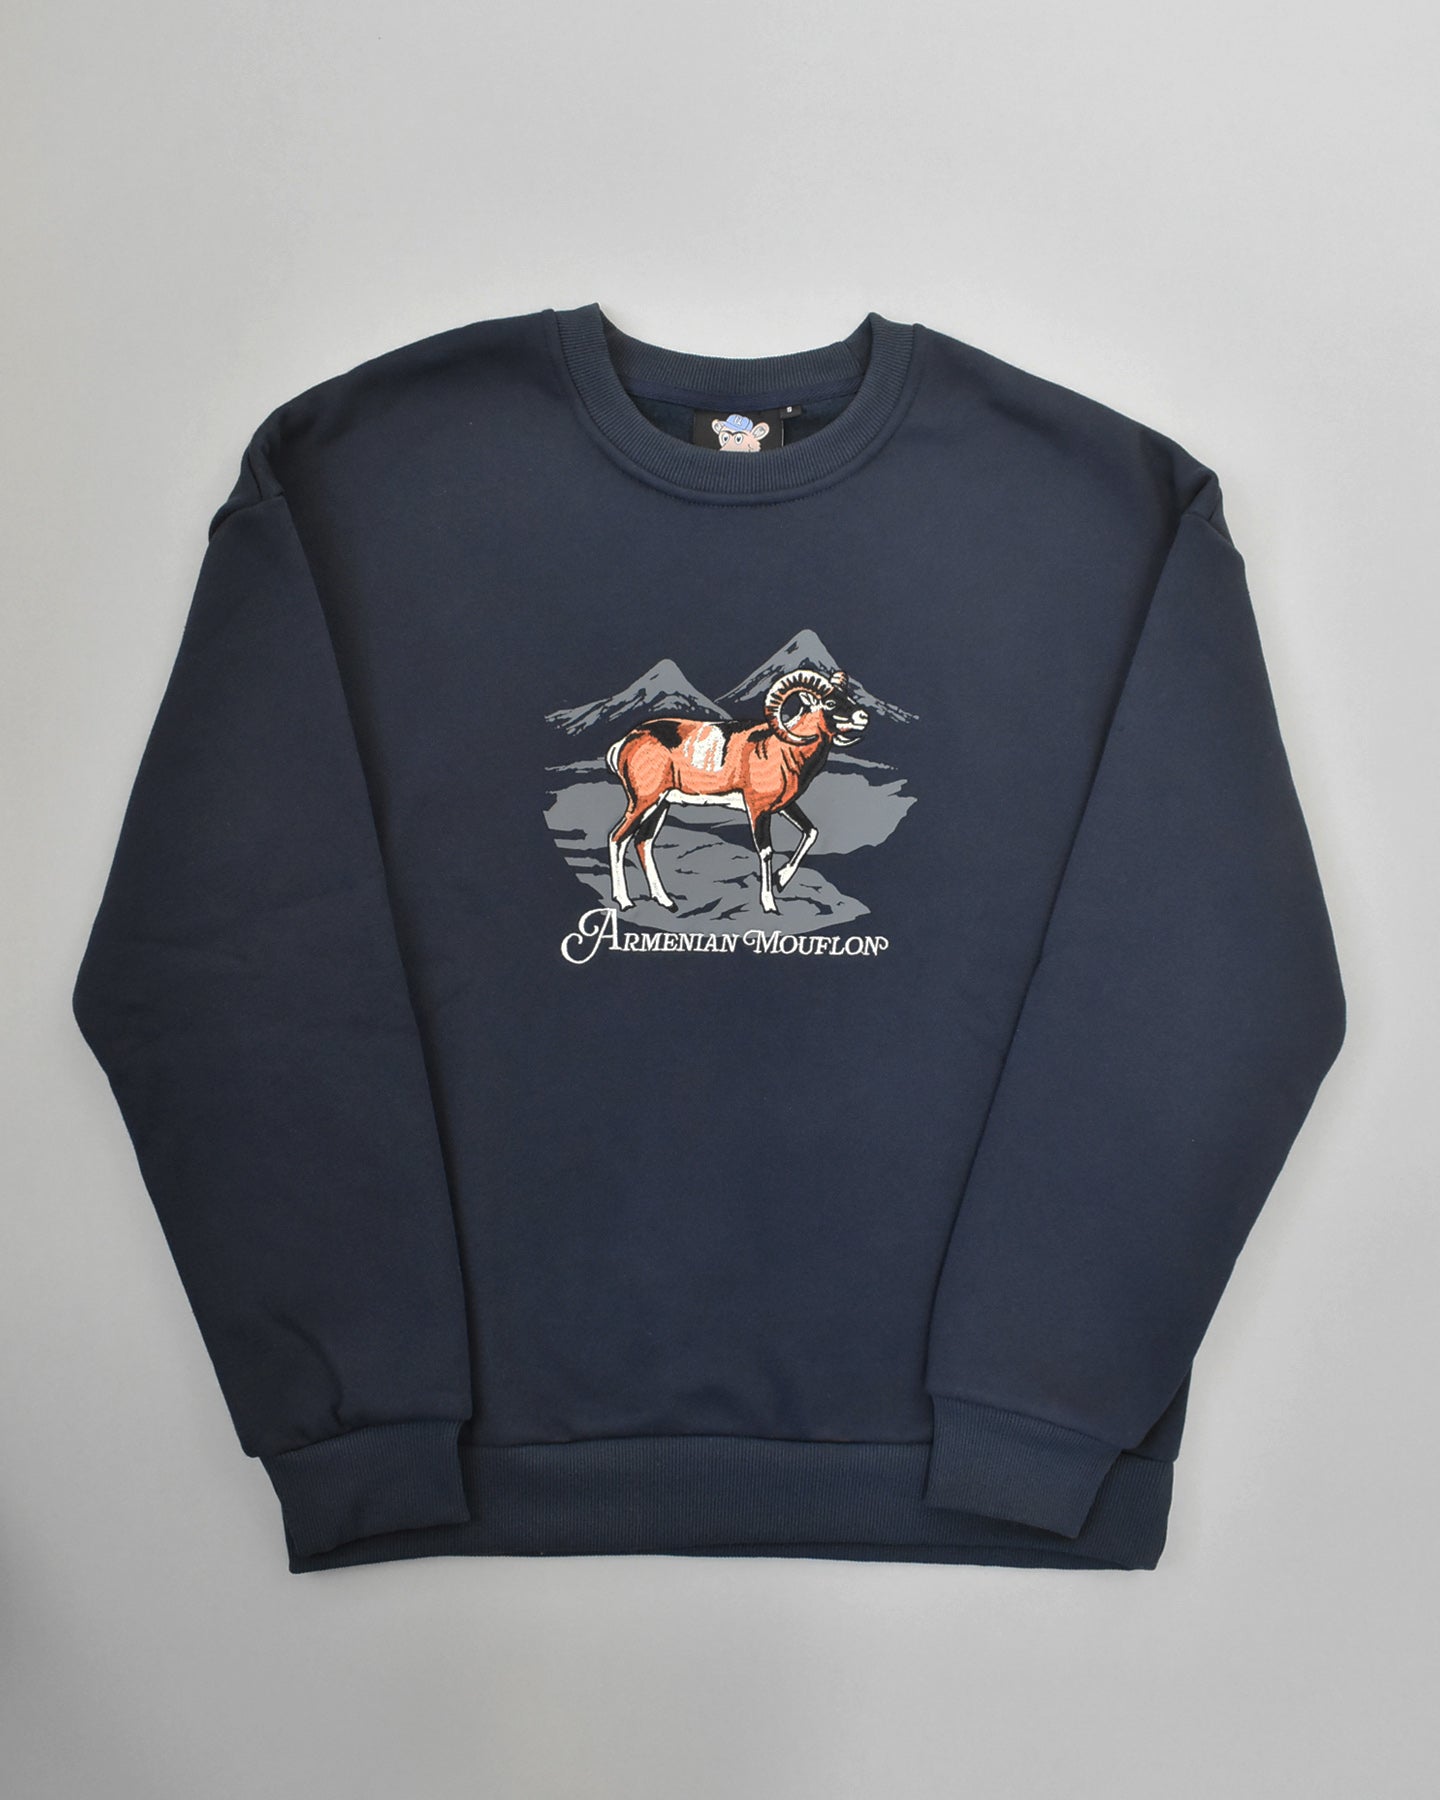 Armenian Mouflon Sweatshirt